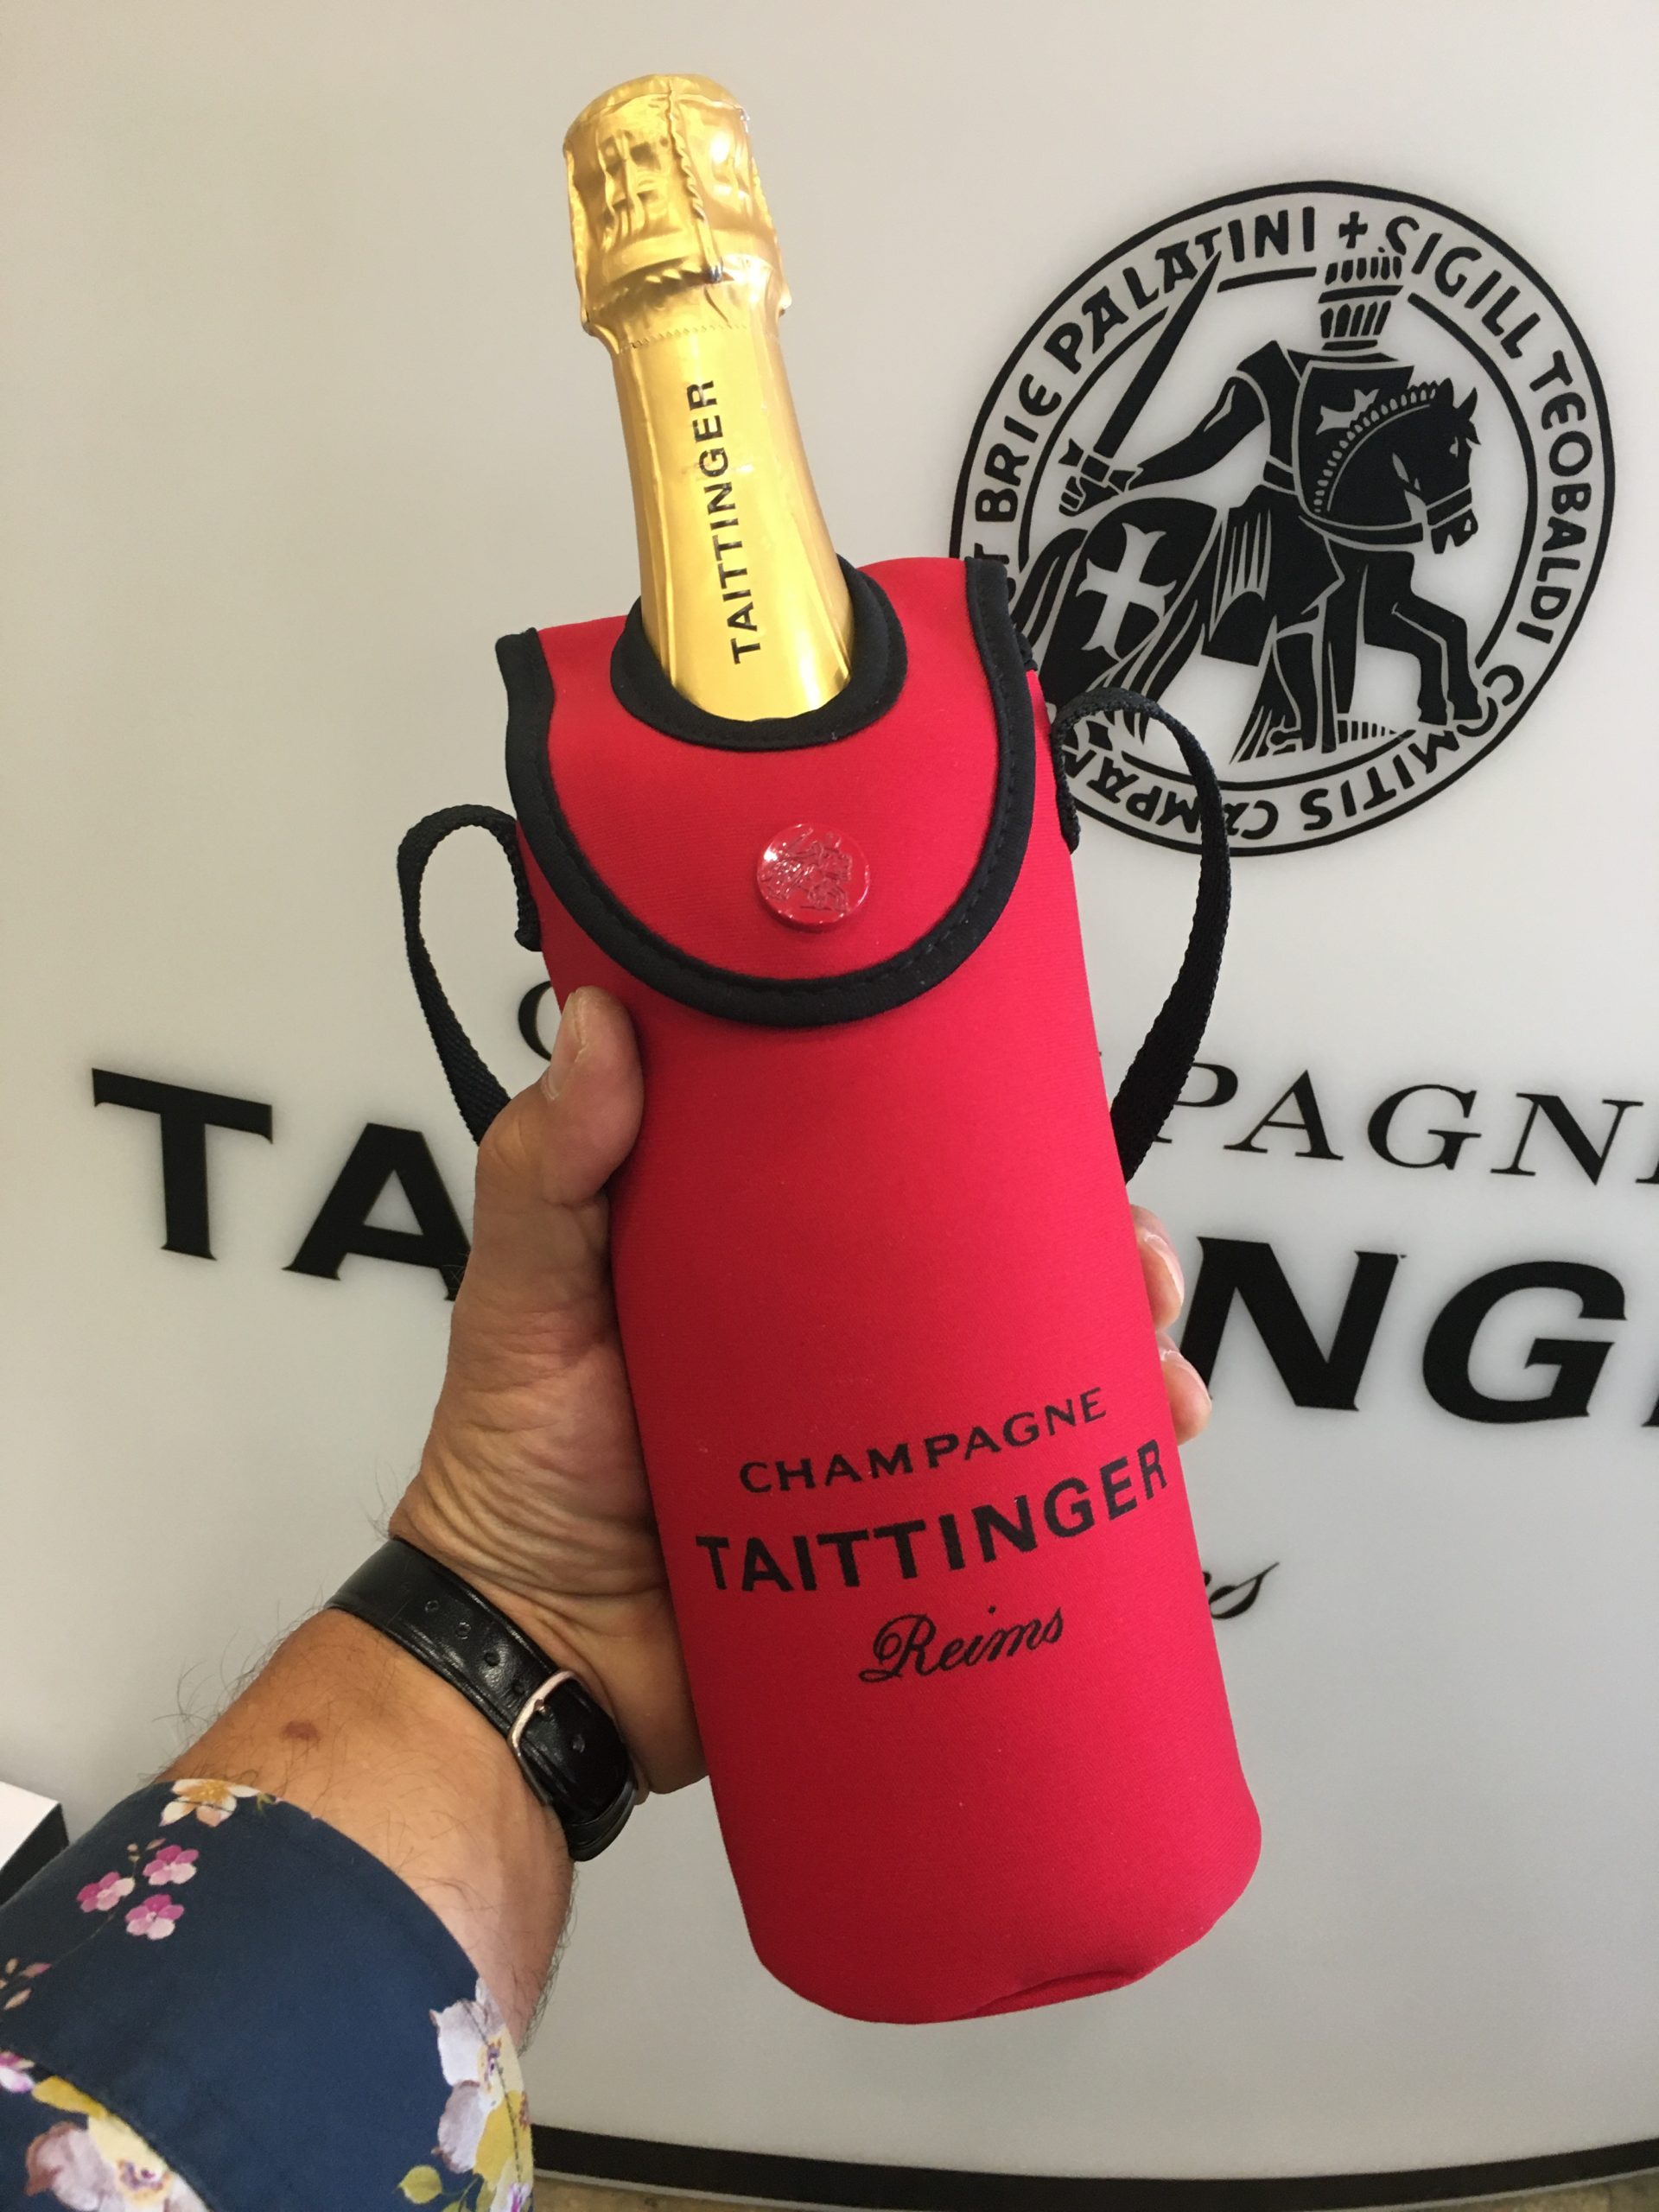 Taittinger neoprén champagne hordozó – 7.500.-Ft